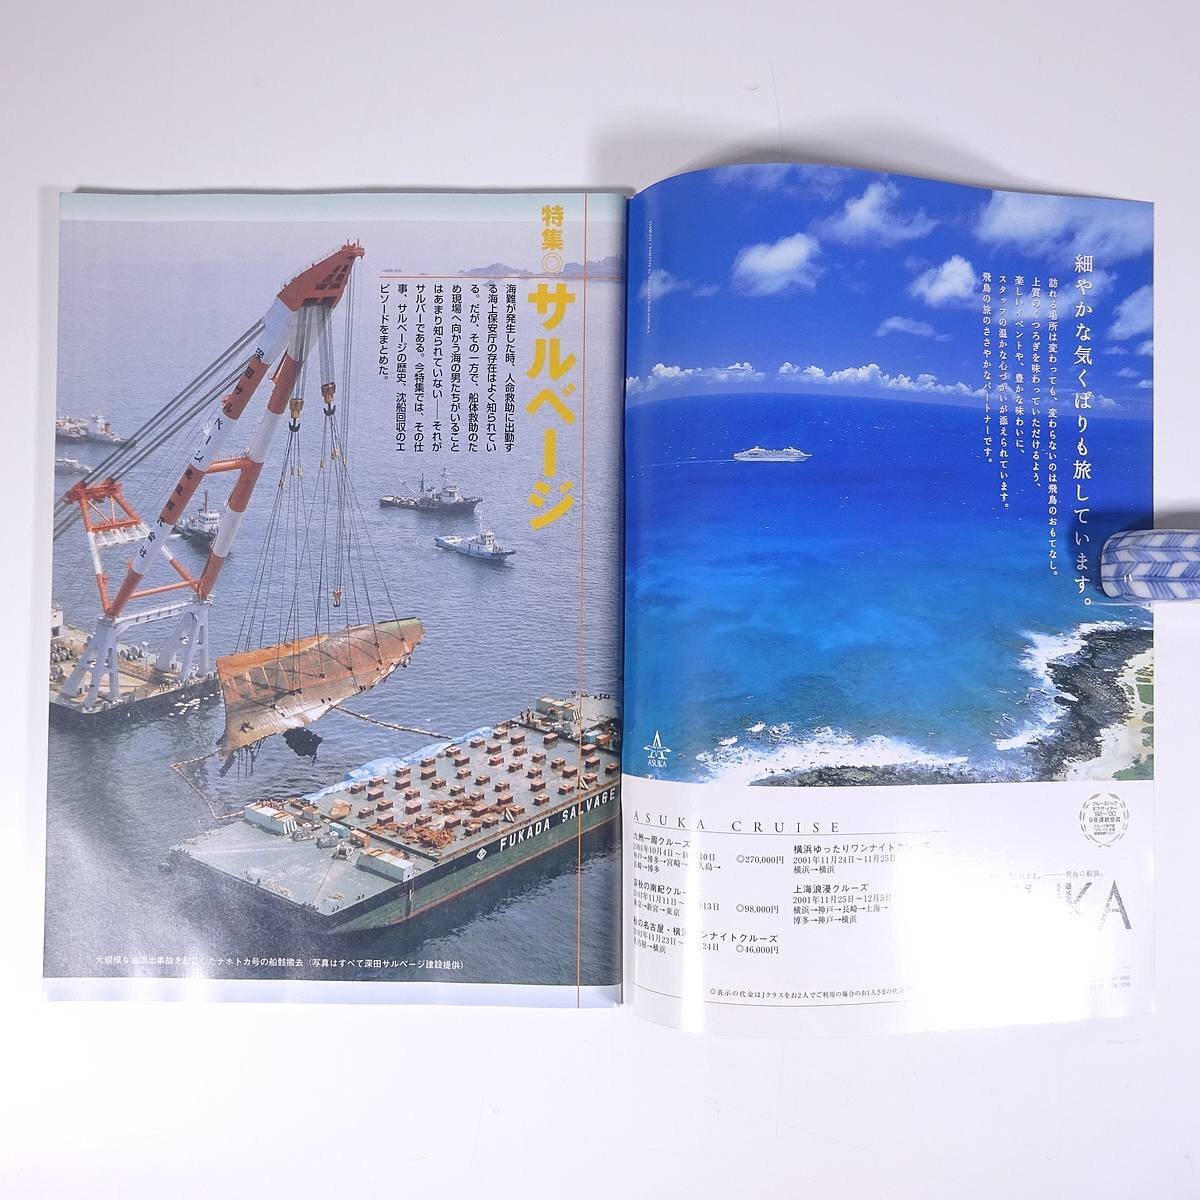  море   и  судно      журнал   LAMER ... mail  No.150 2001/9 *  10  Япония  море   факт ...  журнал    море  ...  судно   специальное издание  *  ... ...   